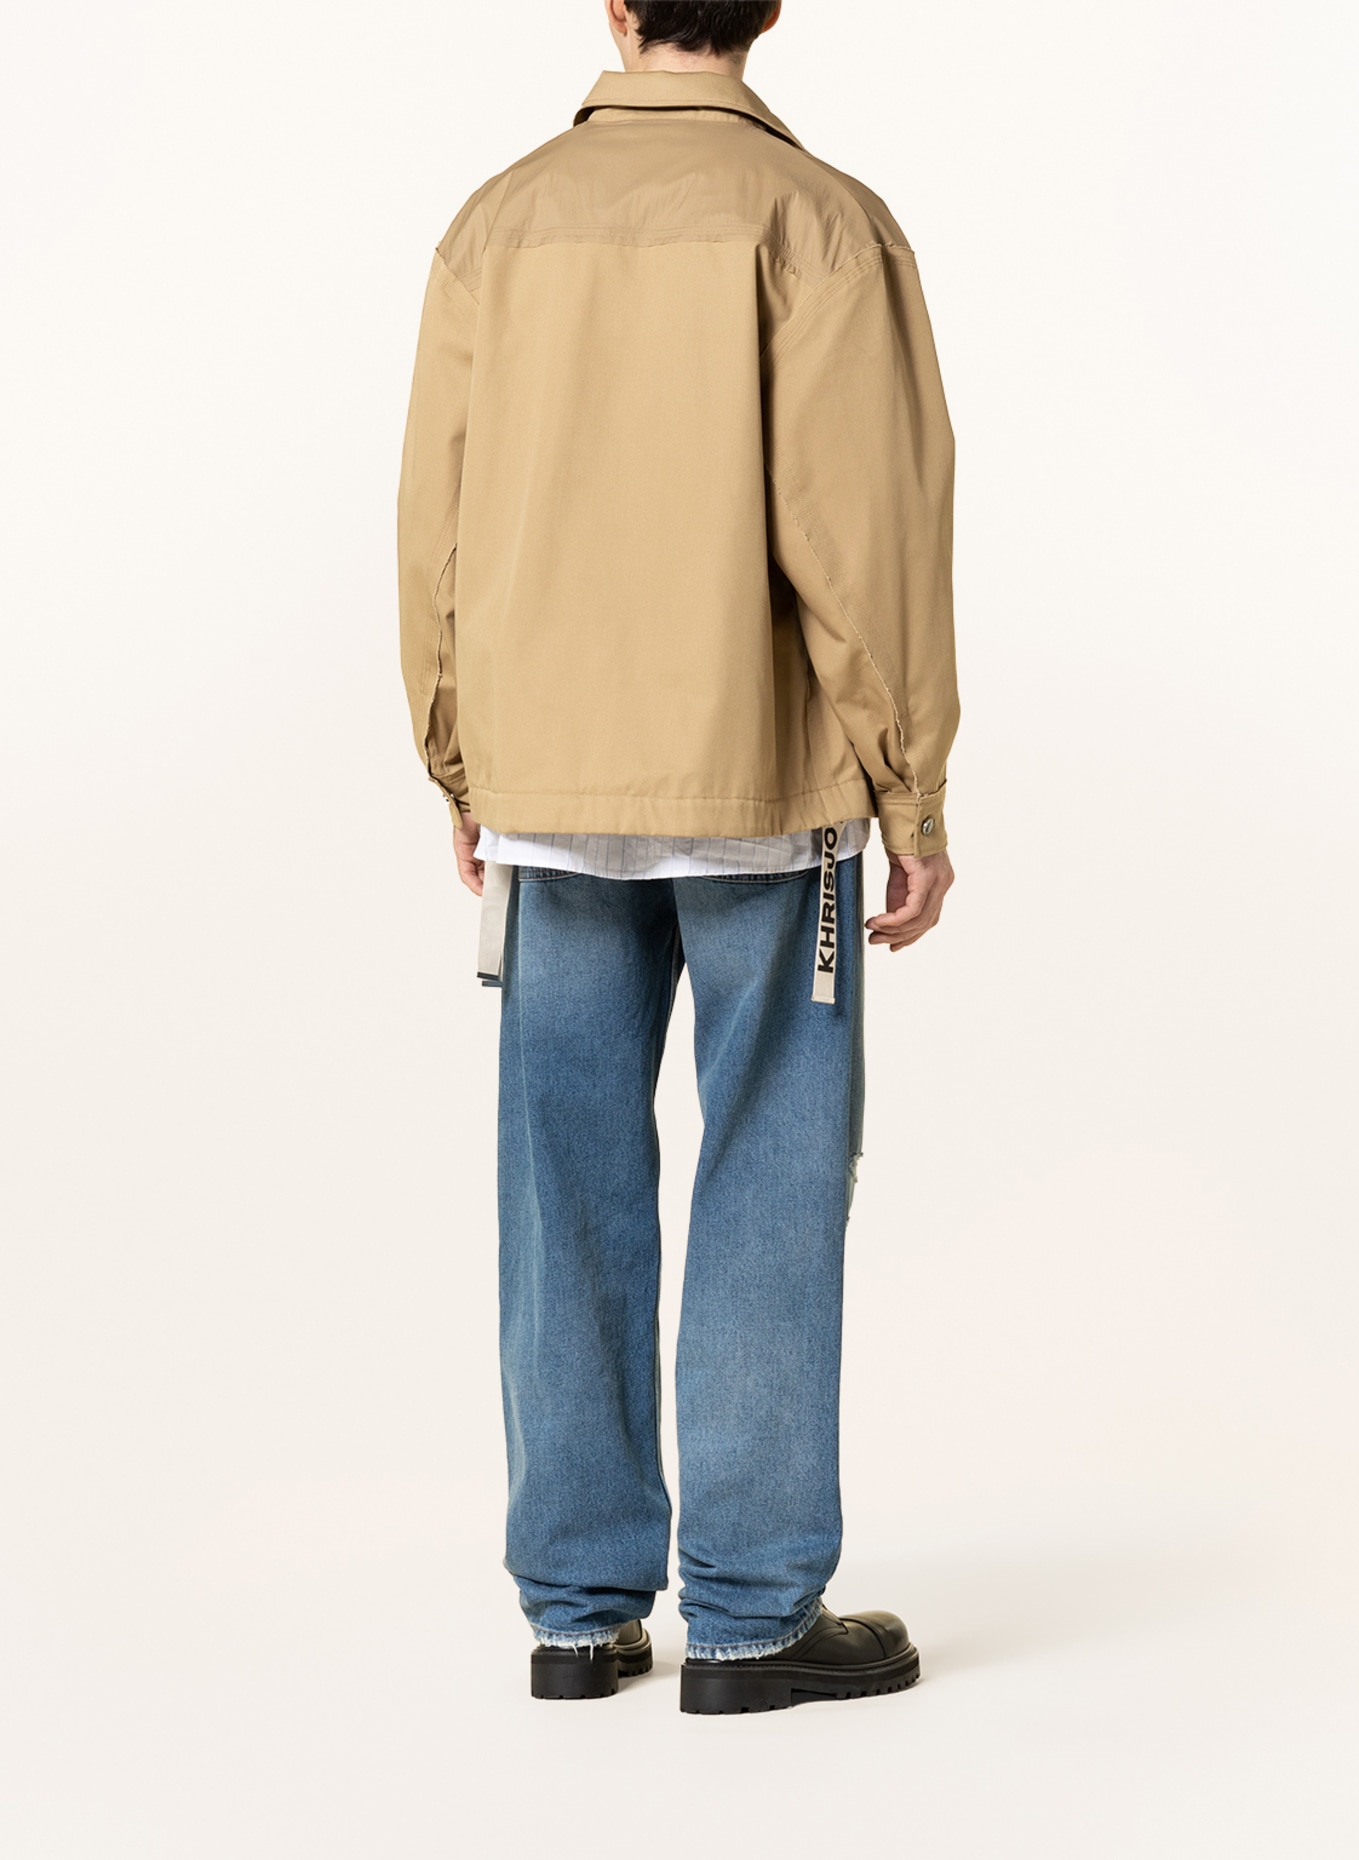 KHRISJOY Jacket, Color: BEIGE (Image 3)